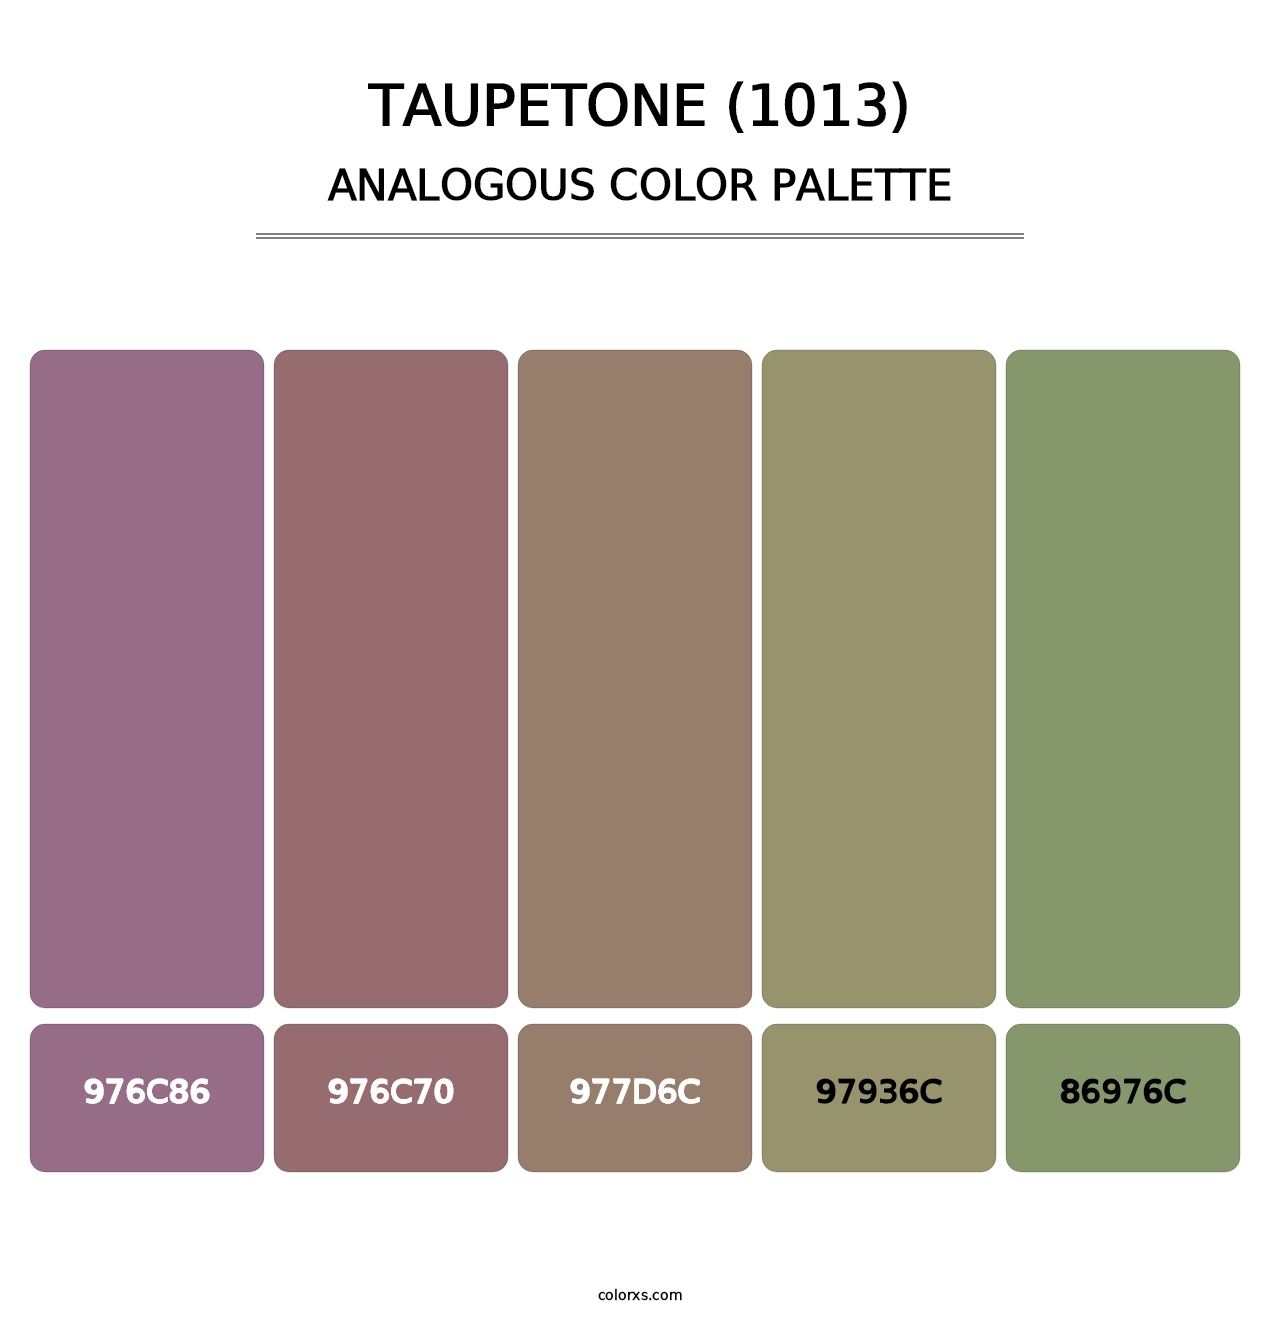 Taupetone (1013) - Analogous Color Palette